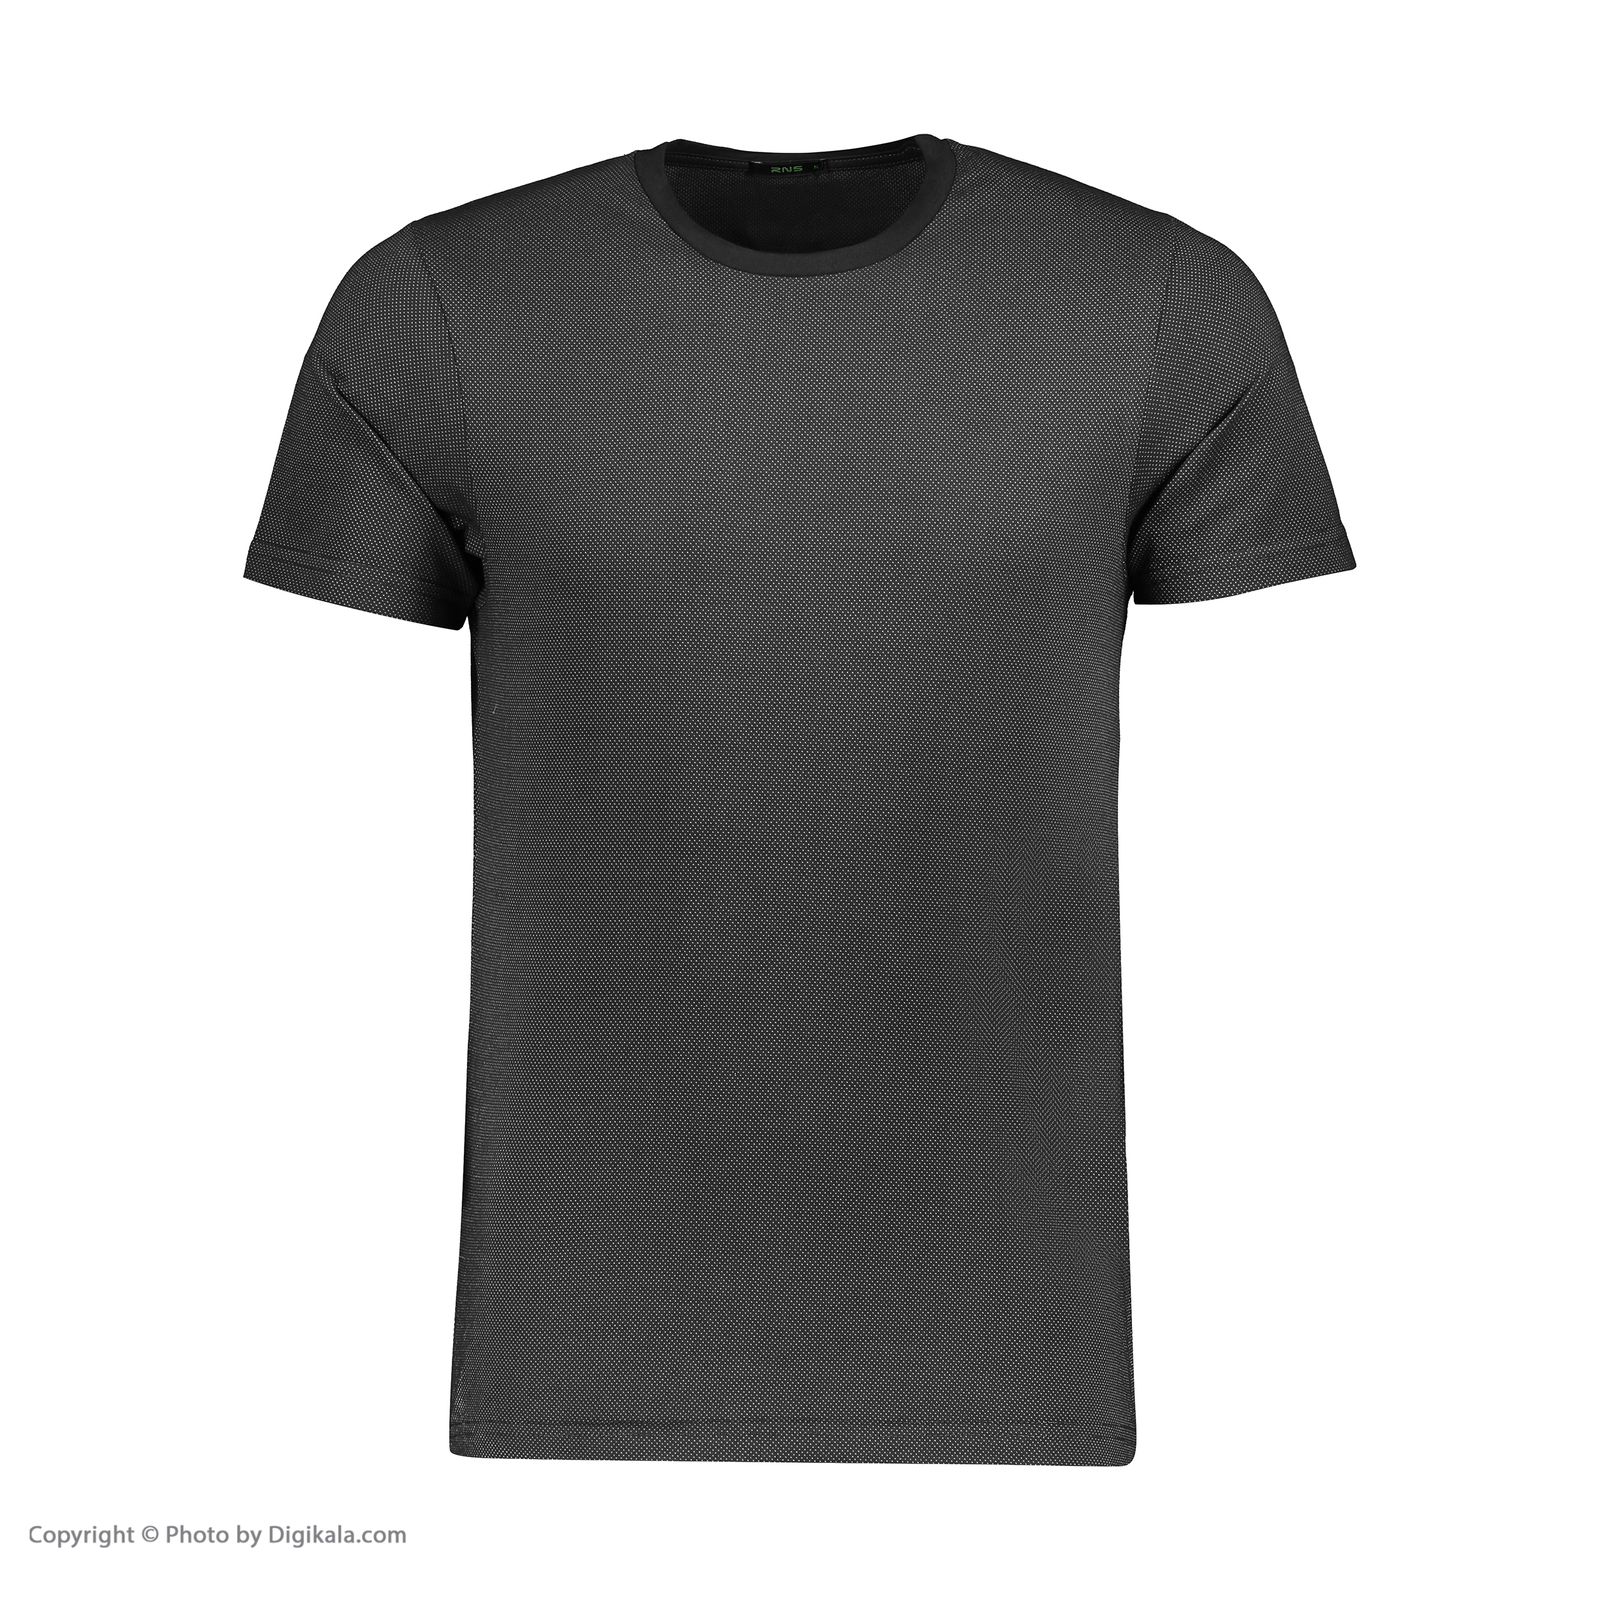 تی شرت مردانه آر ان اس مدل 1131143-99